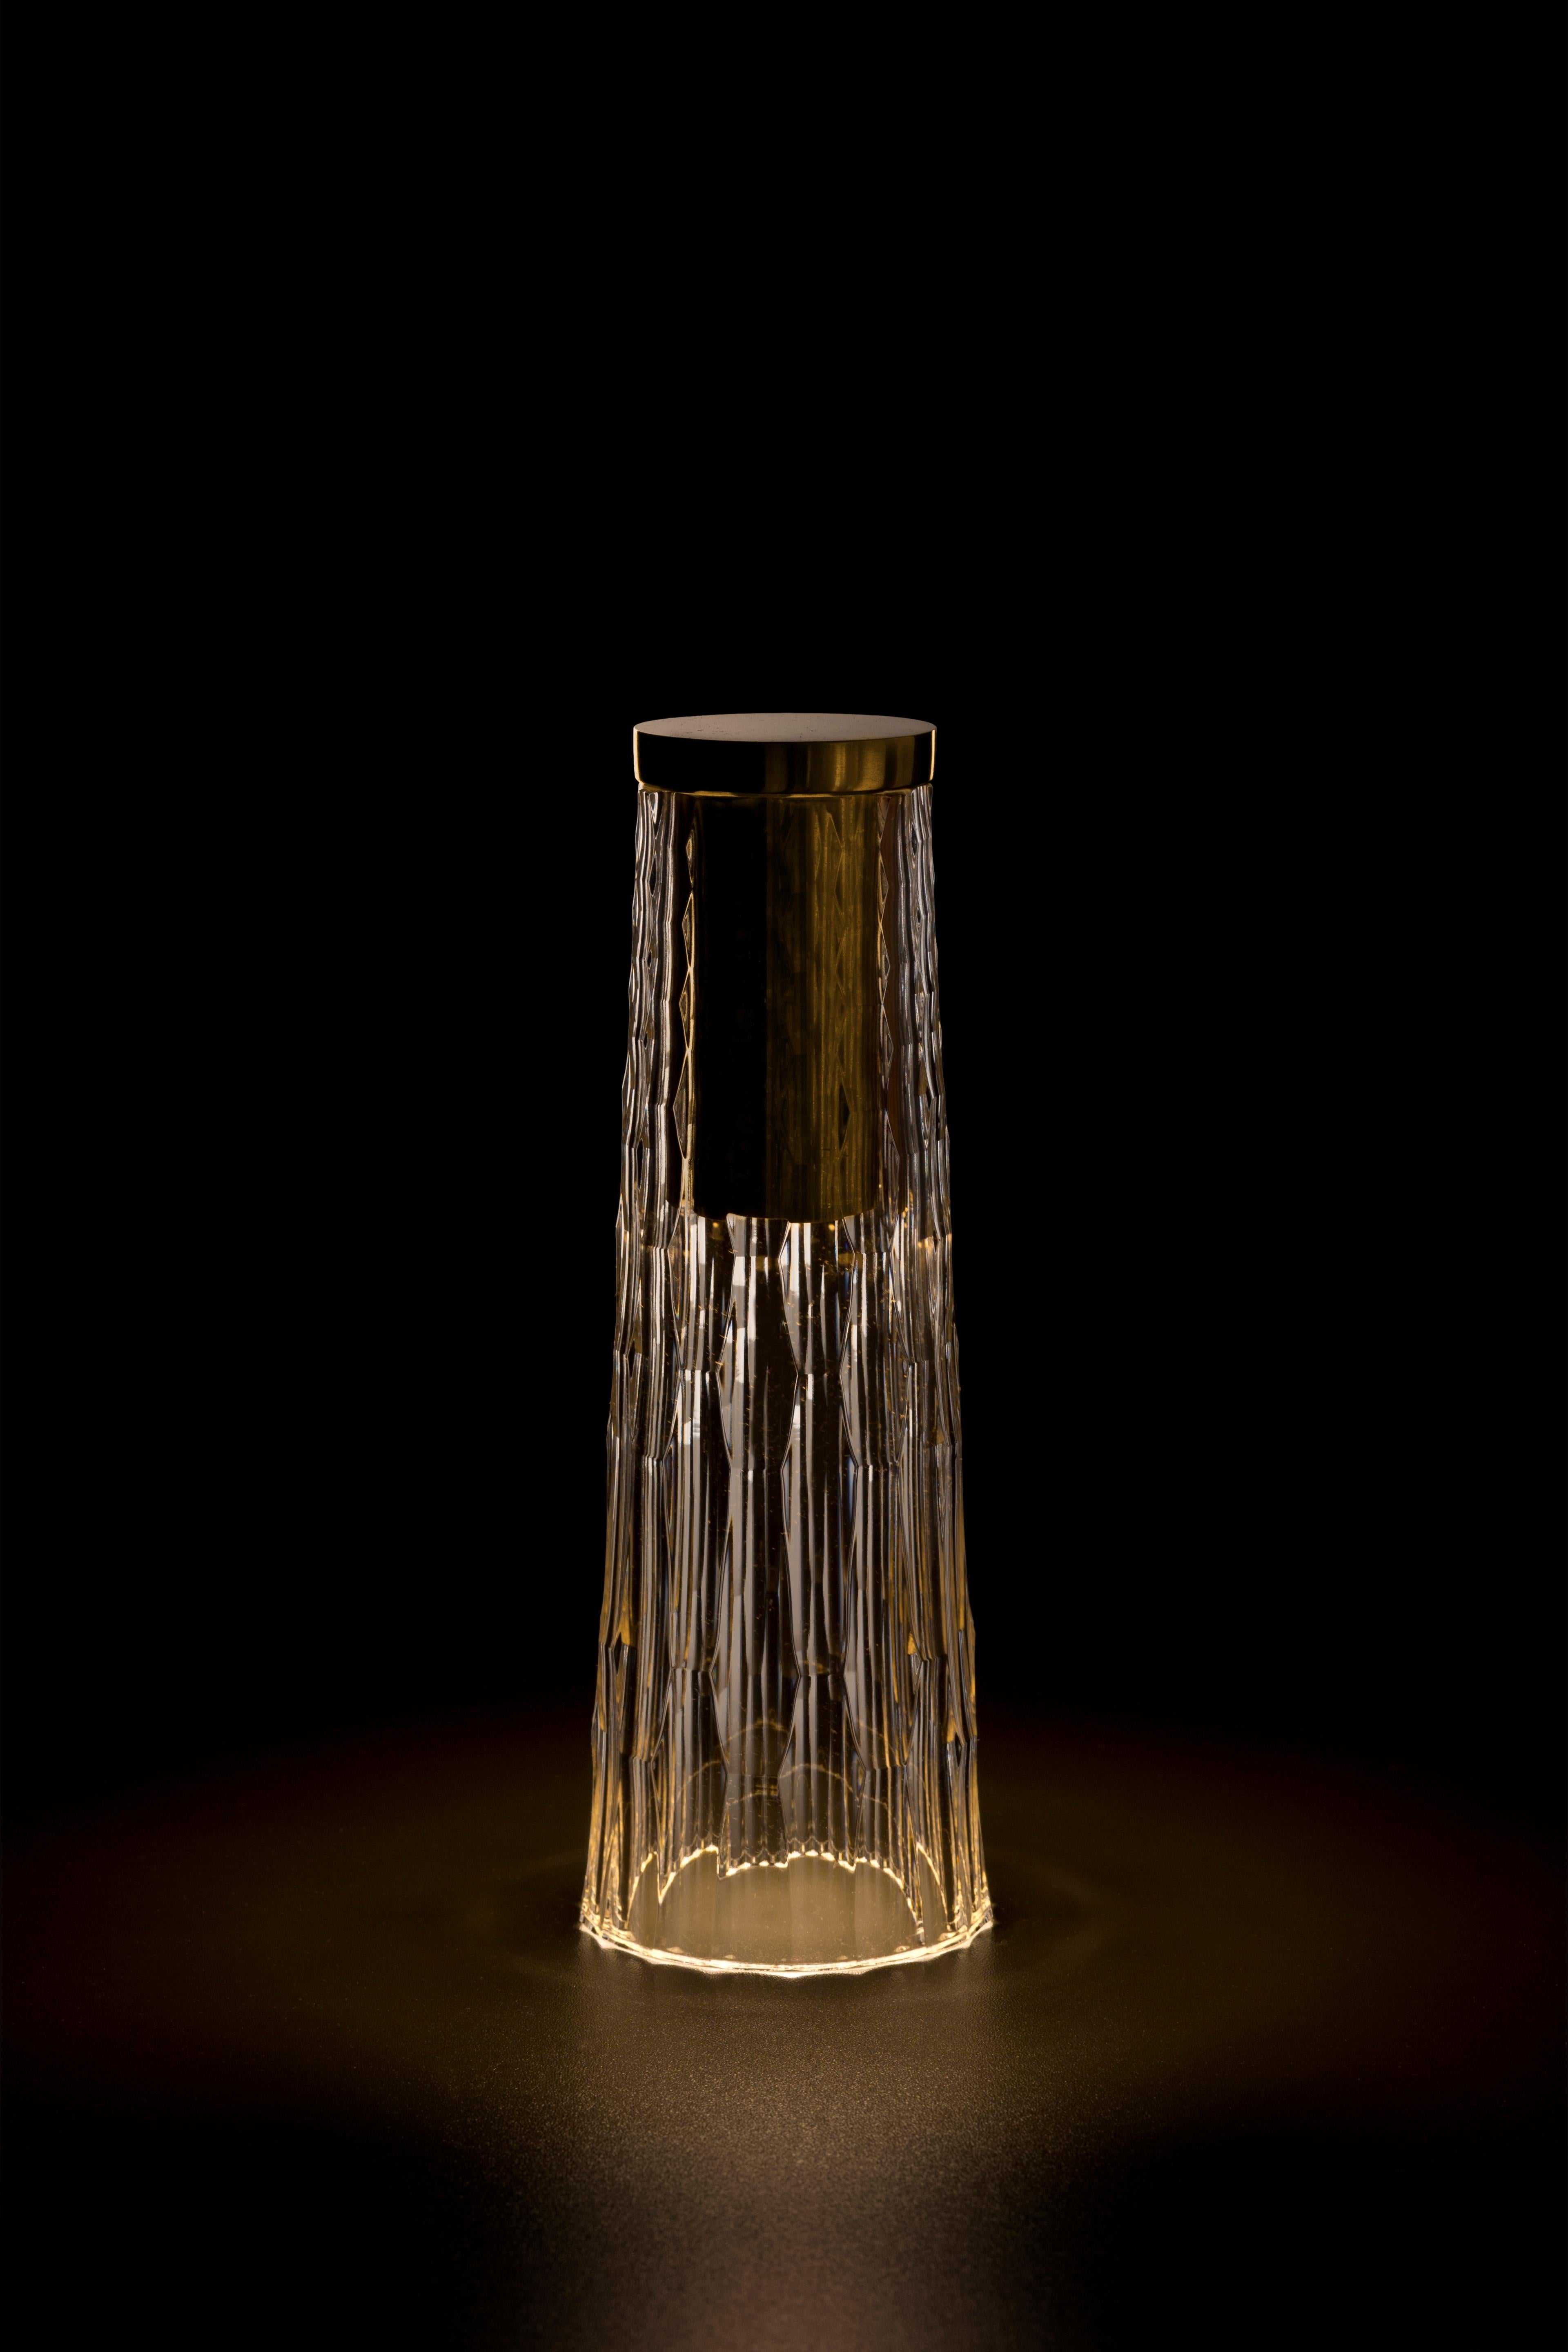 Die kabellose, tragbare Tischleuchte Babel crystal wurde von Noe Duchaufour Lawrance für GAIA&GINO entworfen. 

Die kabellose Tischleuchte Babel ist von den Handwerkern inspiriert, die Kristall schleifen. Jede ihrer Gesten, die sie über Jahre hinweg